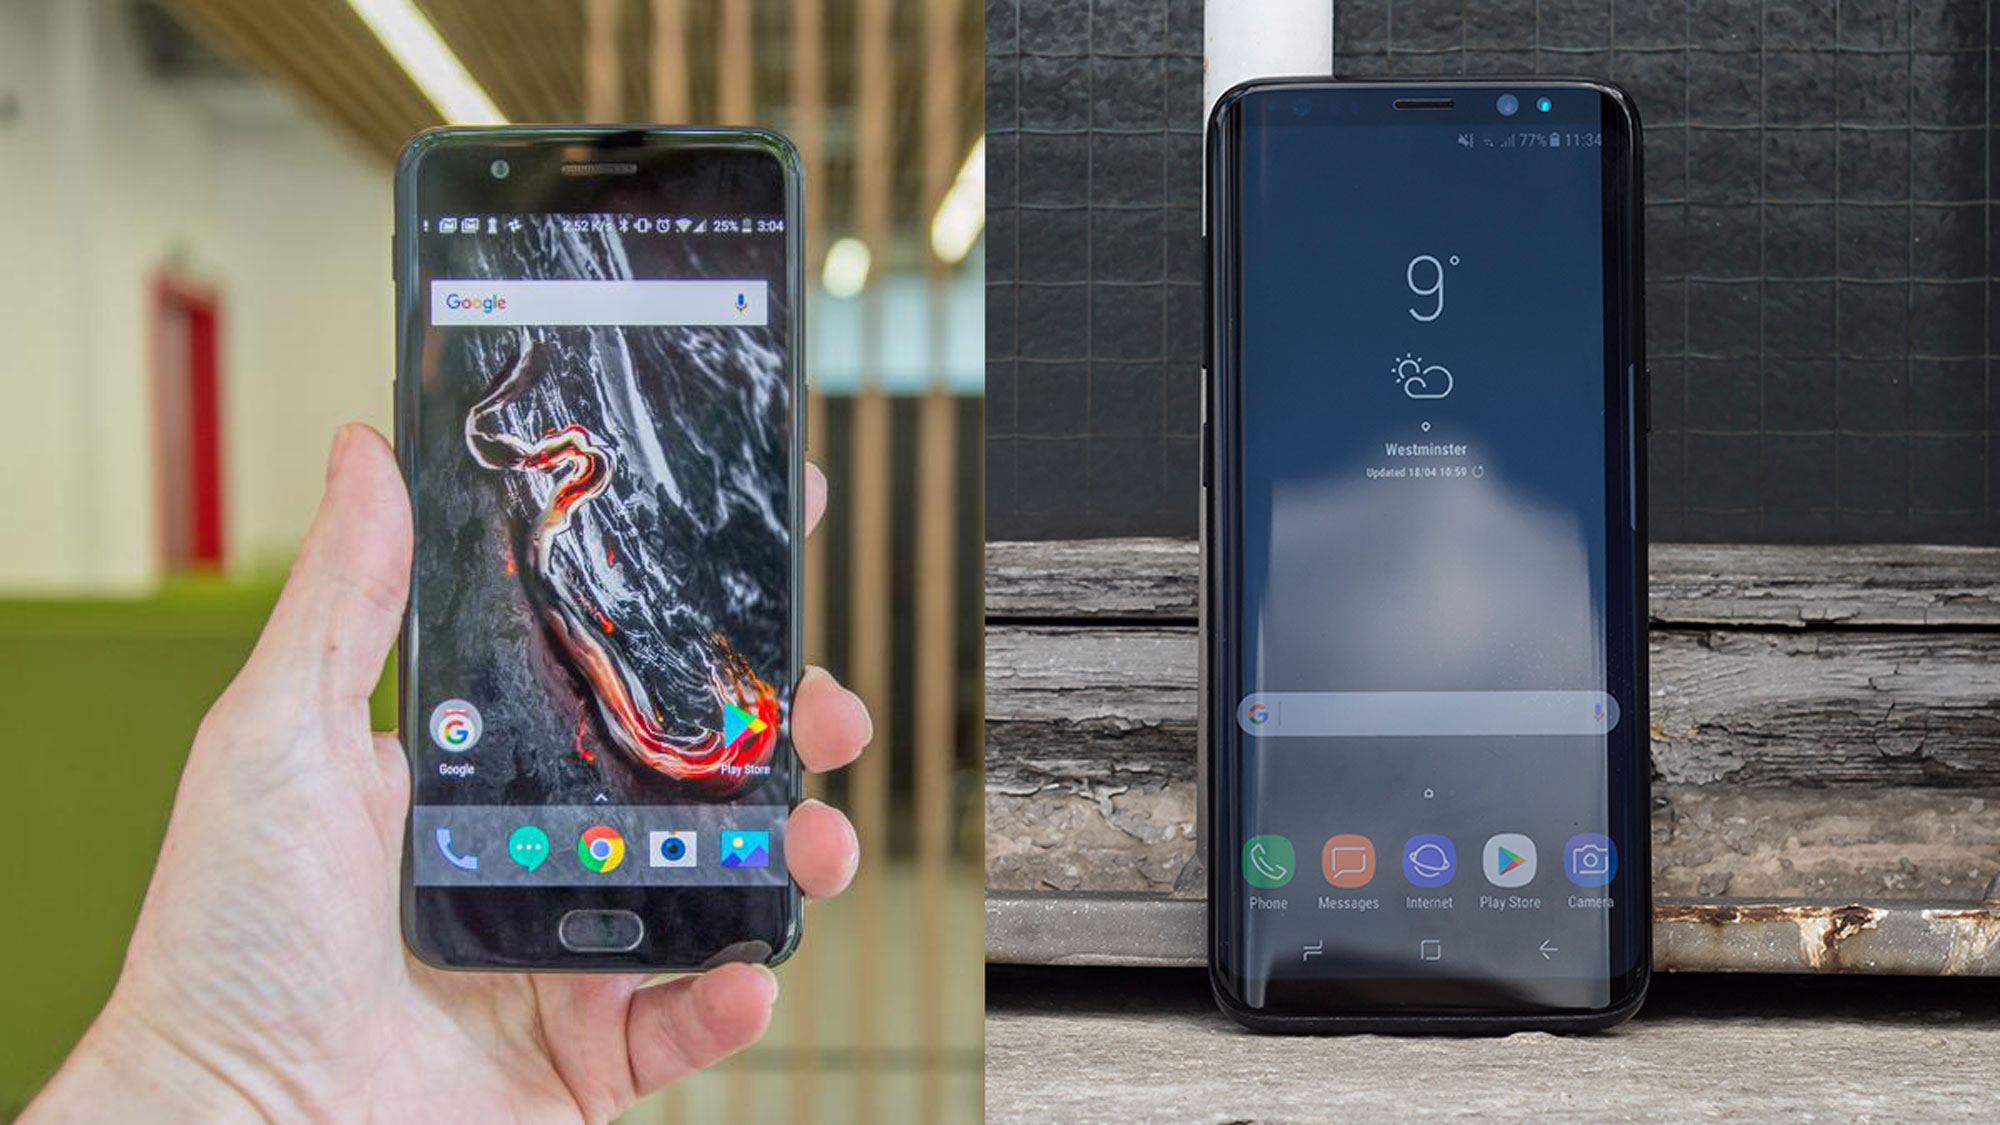 ون بلس 5 مقابل سامسونج Galaxy S8: ما هو هاتف Android عالي المواصفات الذي يجب أن تشتريه؟